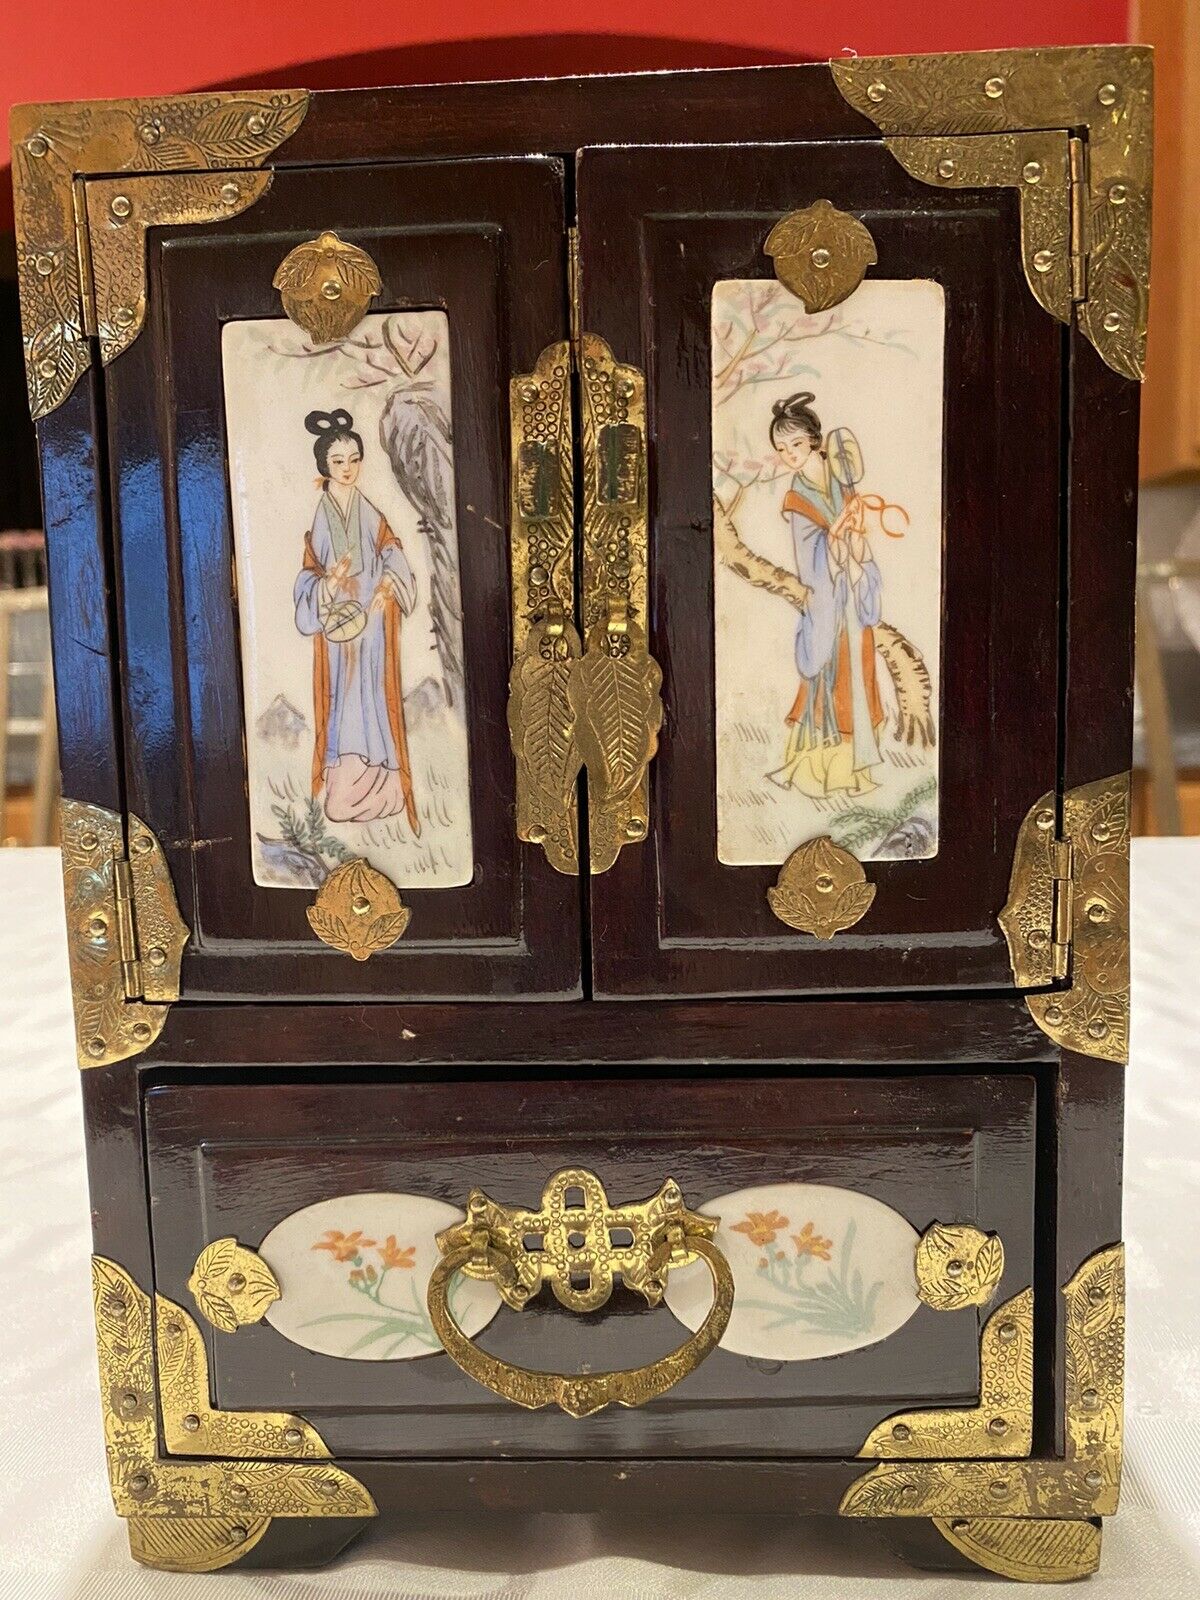 Vintage Chinese Wood Jewerly Organizer Chest Box, Brass Accent 2 Oriental Women